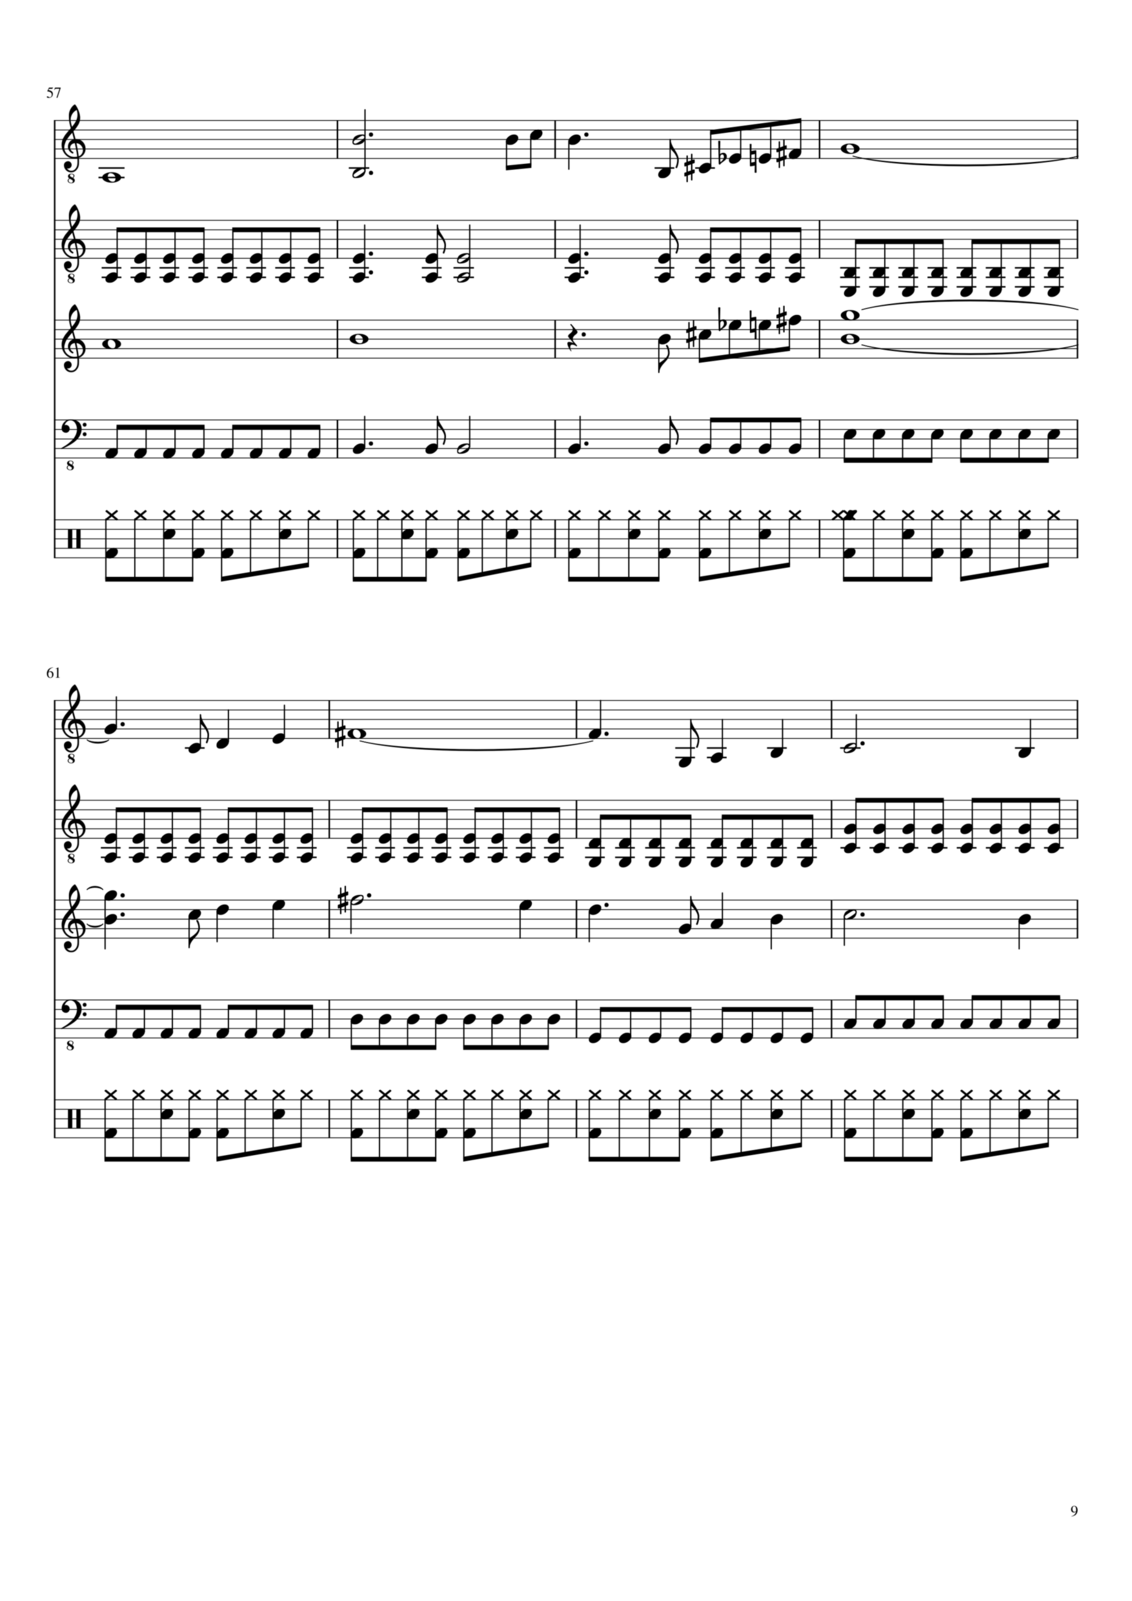 Vospominaniya o byiloy lyubvi slide, Image 9